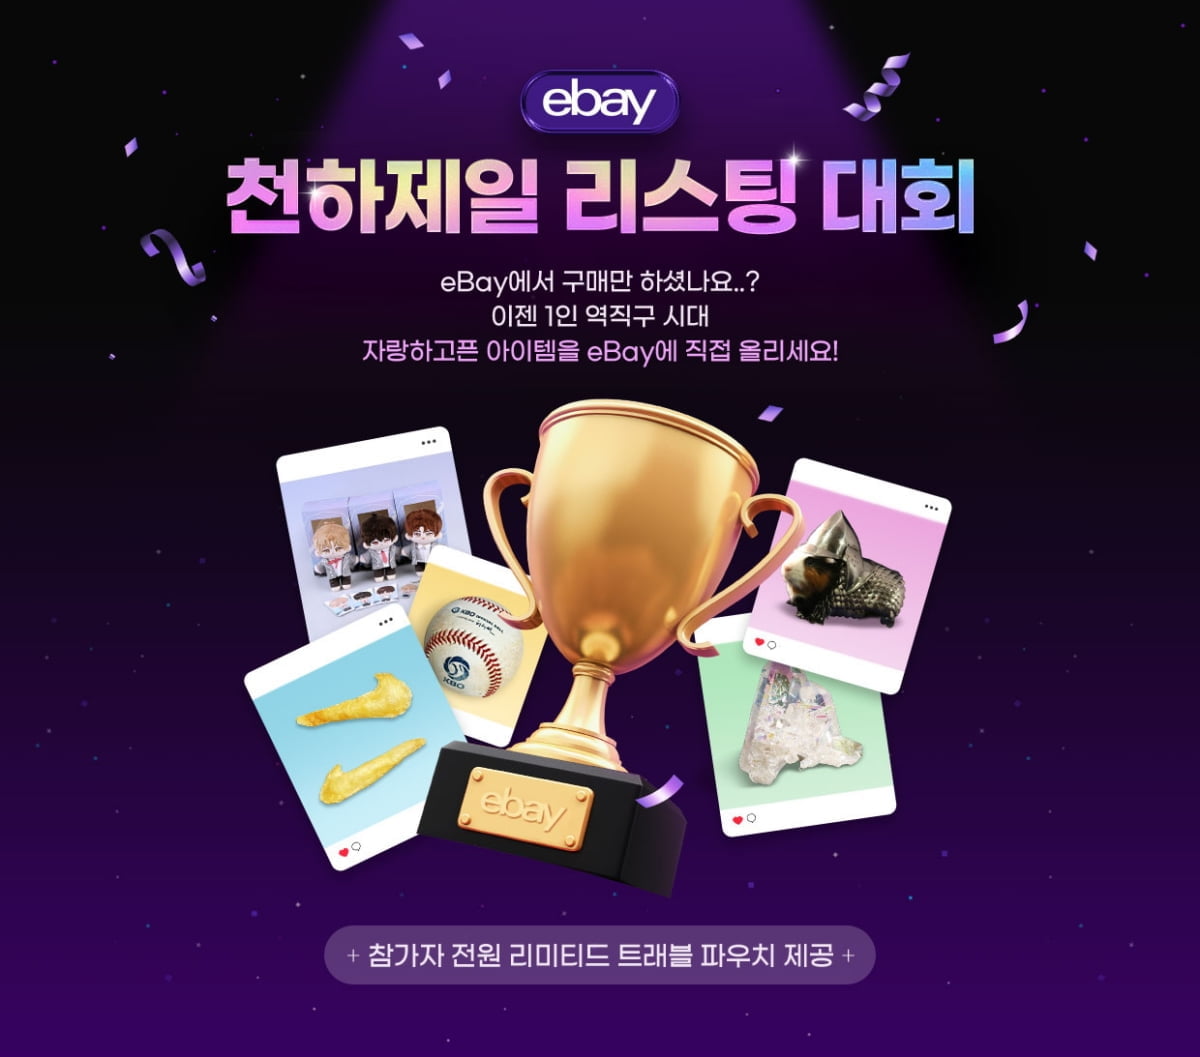 이베이, 1인 무역시대 맞아 해외판매 ‘천하제일 리스팅 대회’ 개최